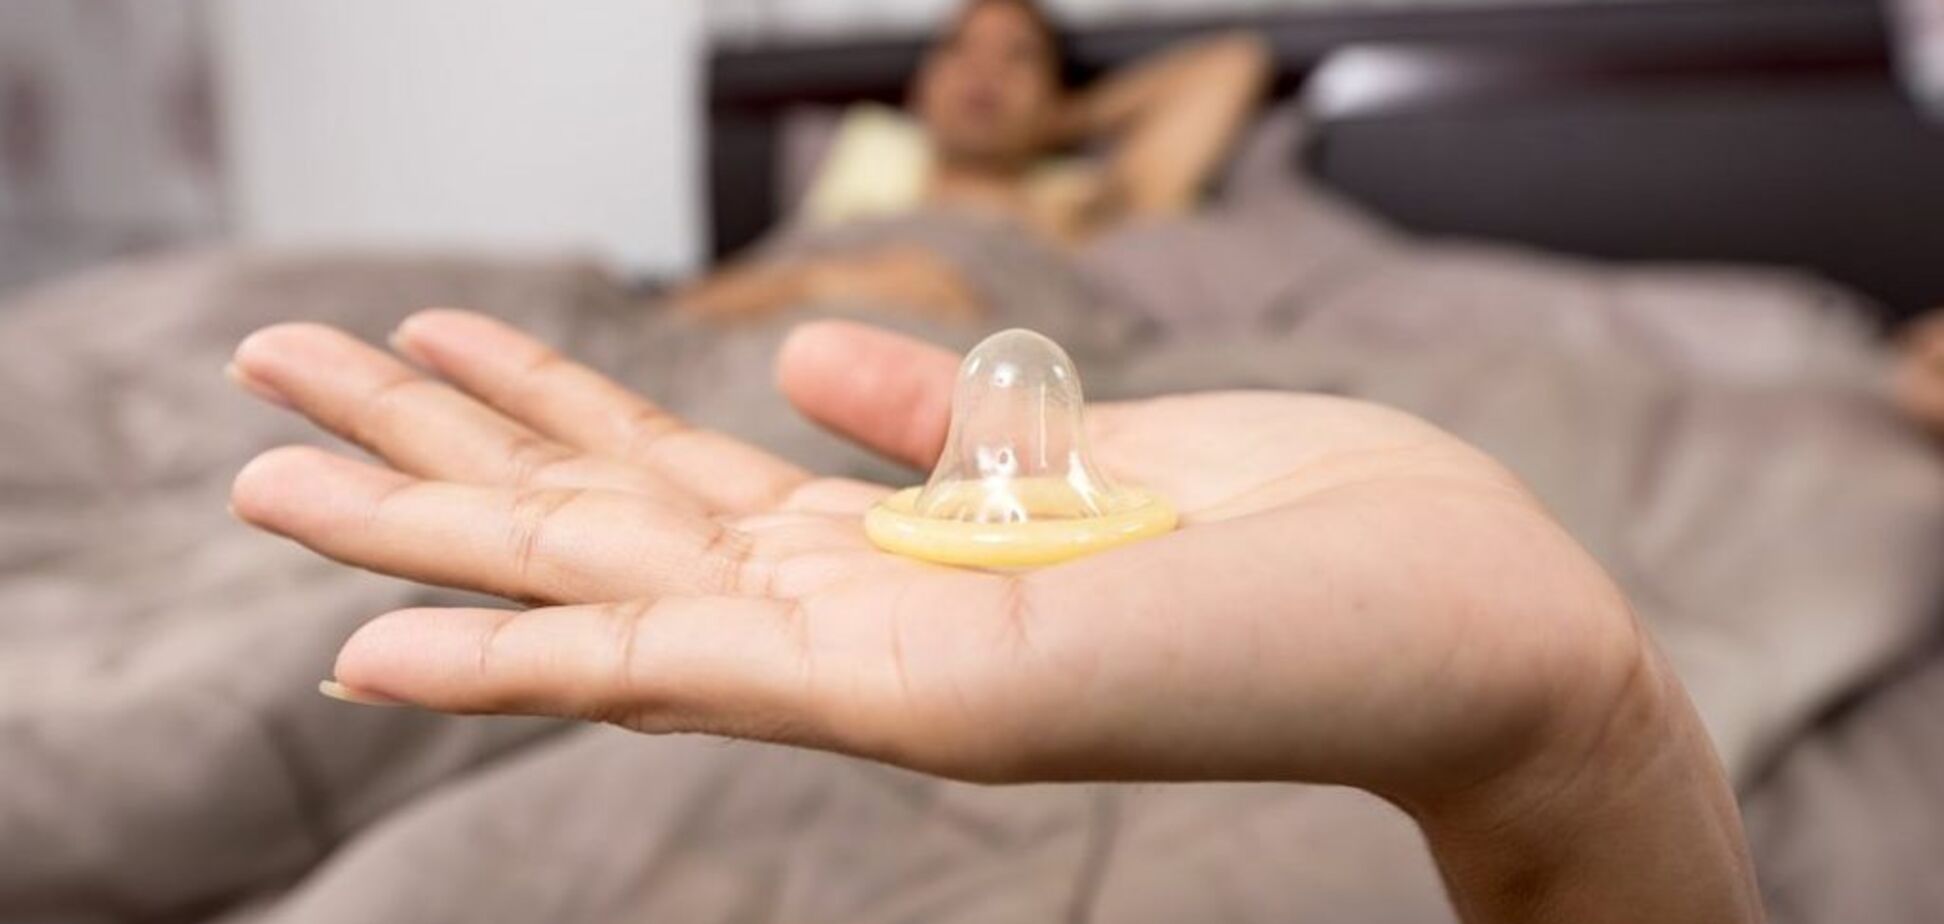 Кондом-челлендж: а вы умеете надеть презерватив одной рукой?